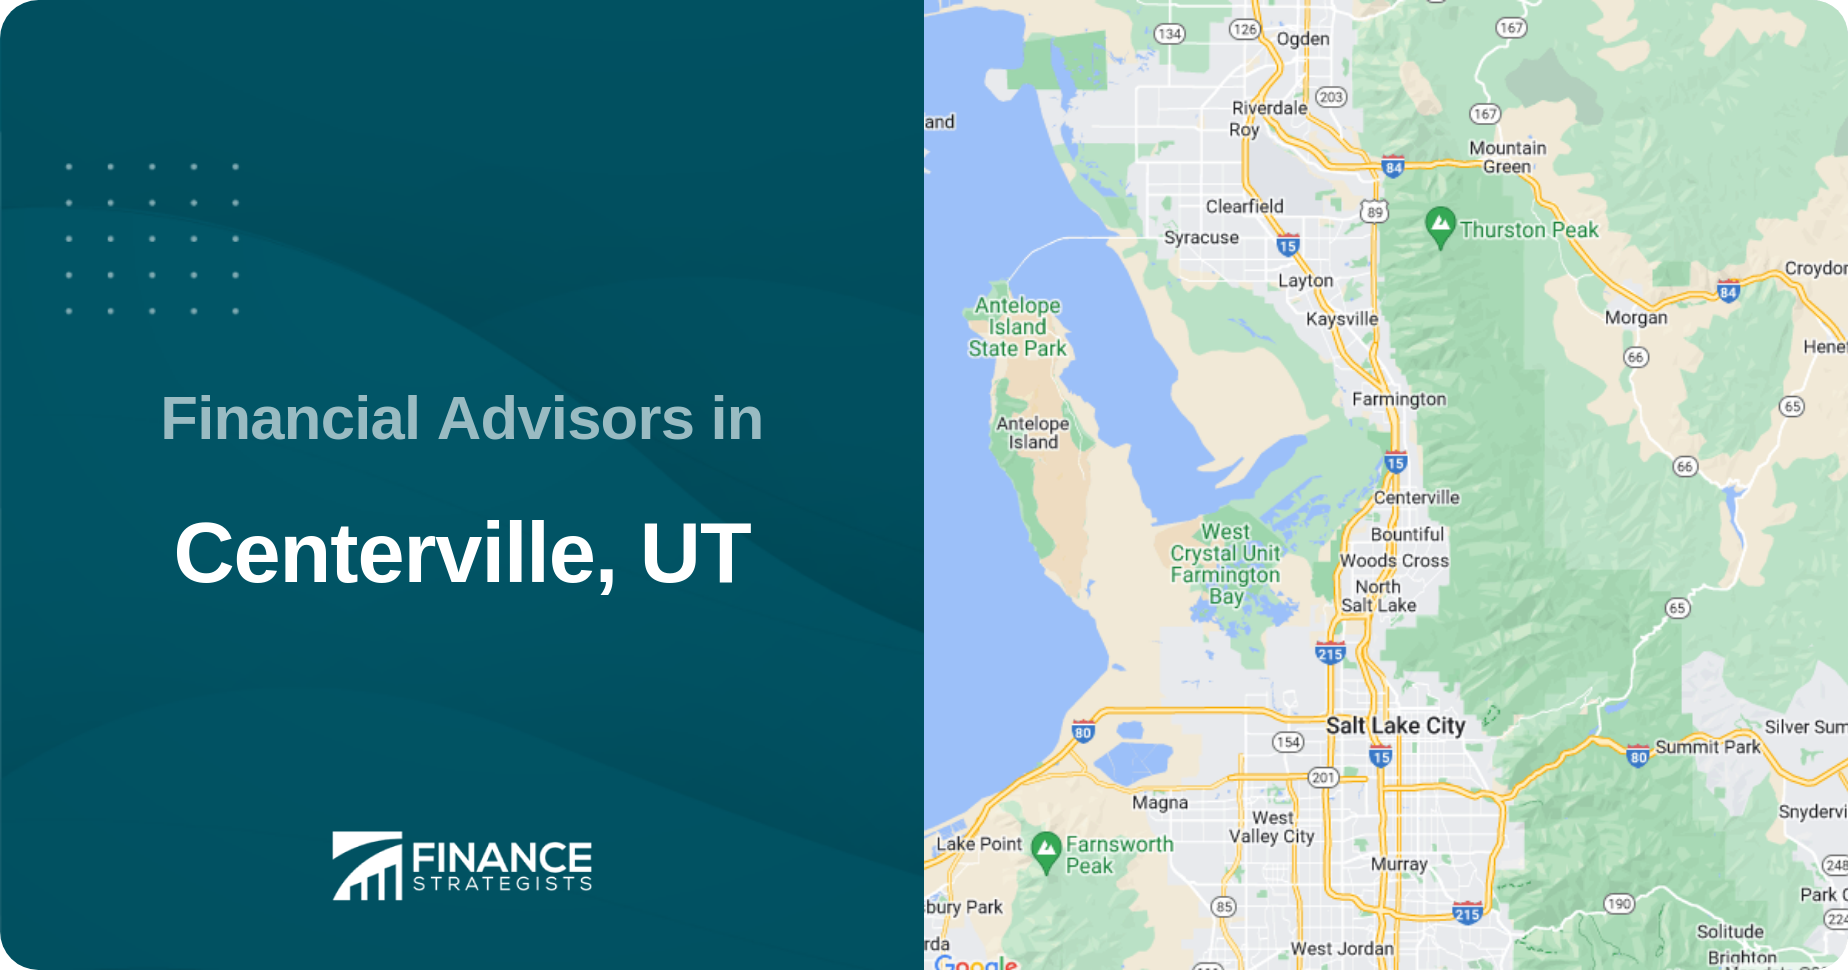 Financial Advisors in Centerville, UT